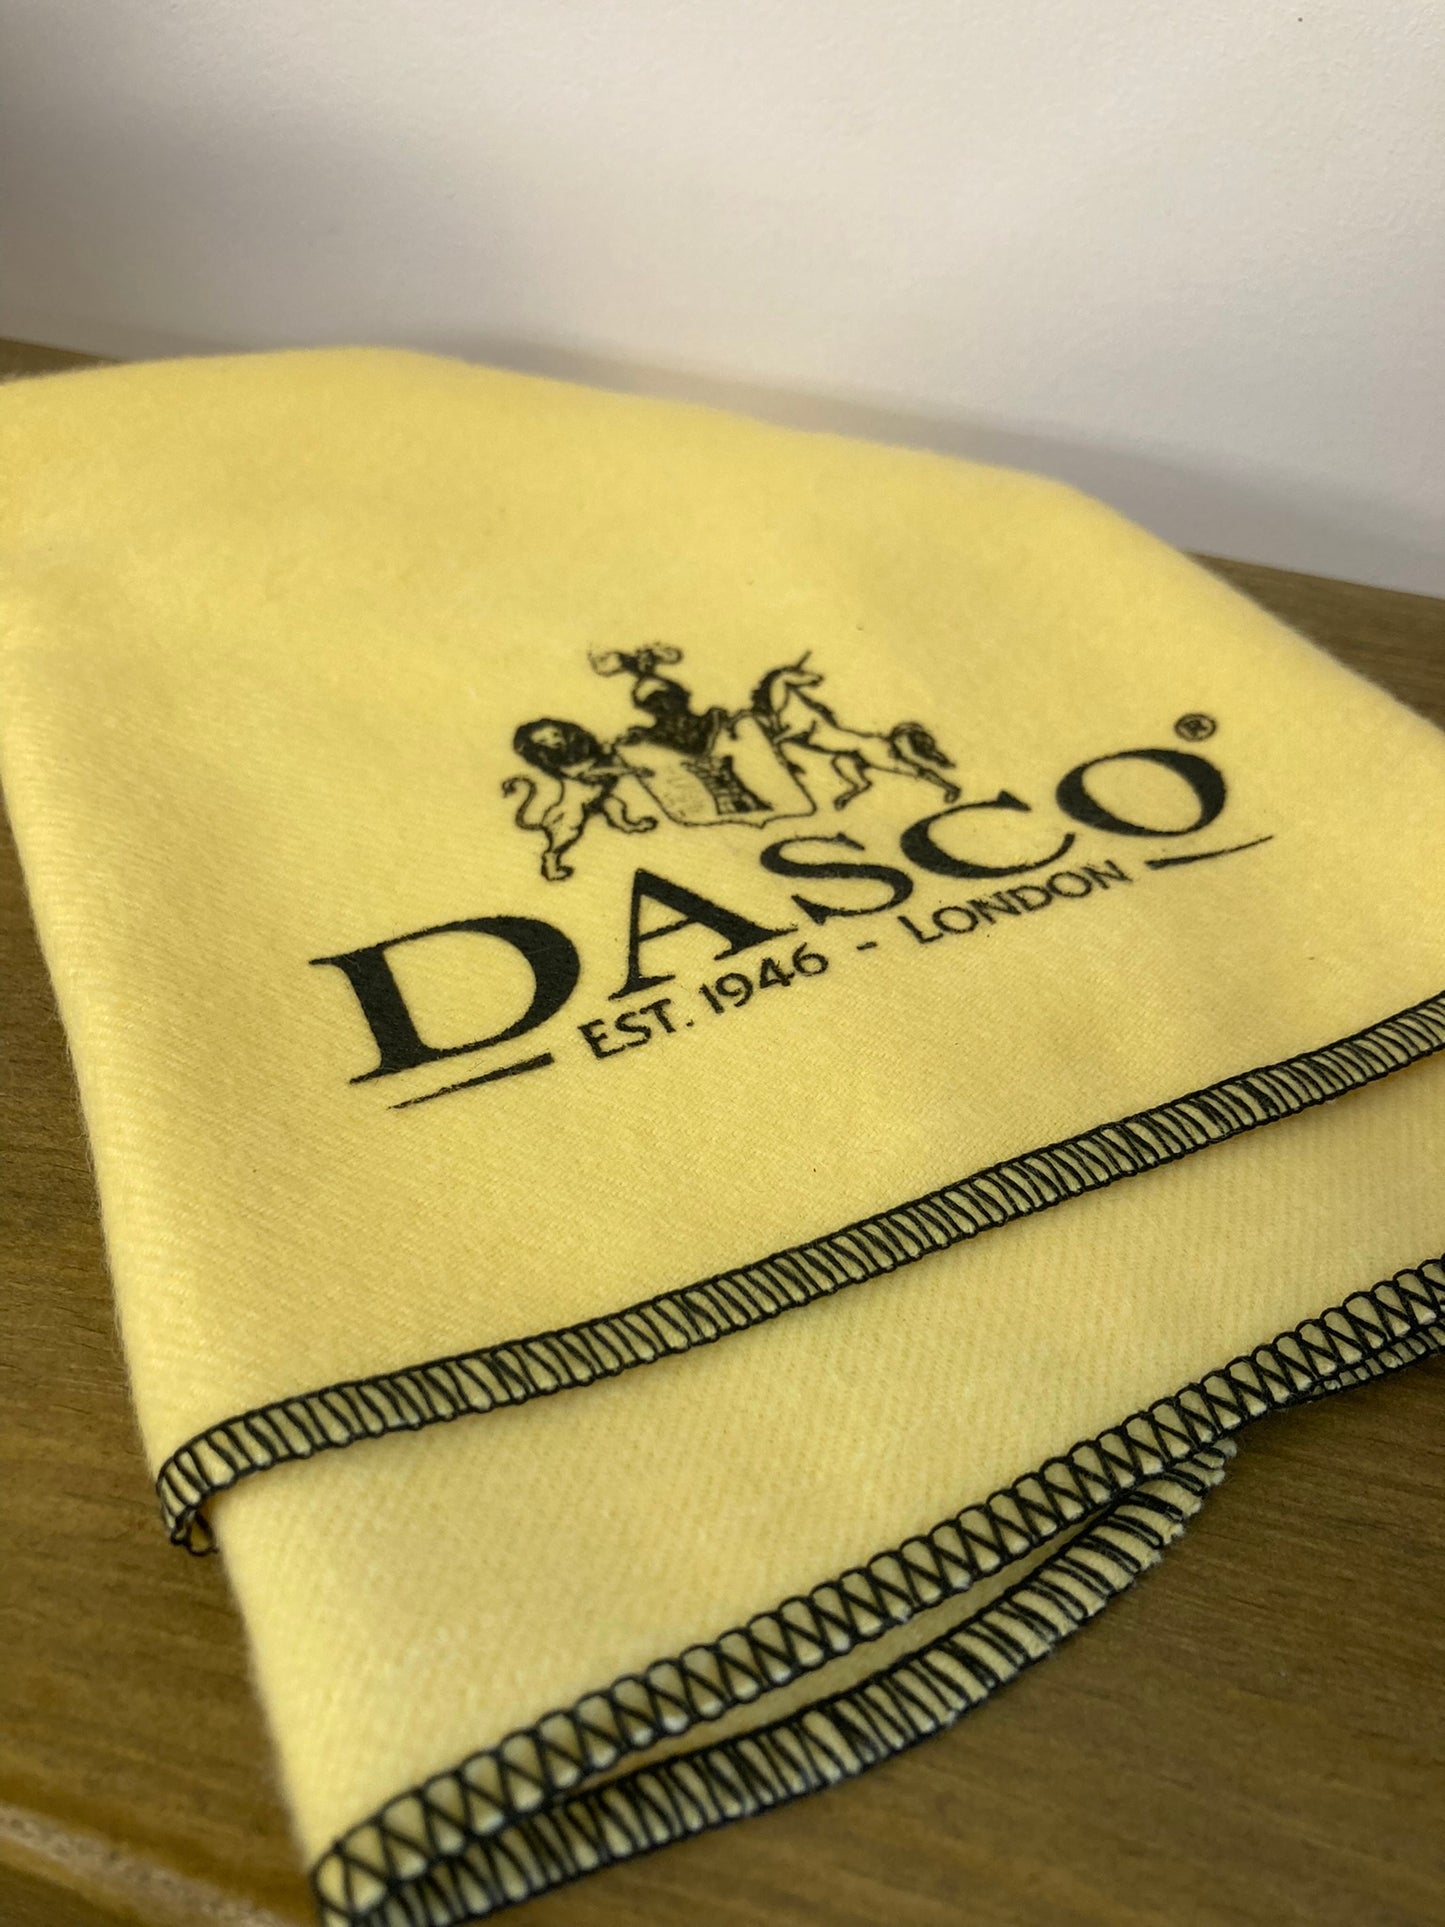 Dasco luxury shoe polishing cloth